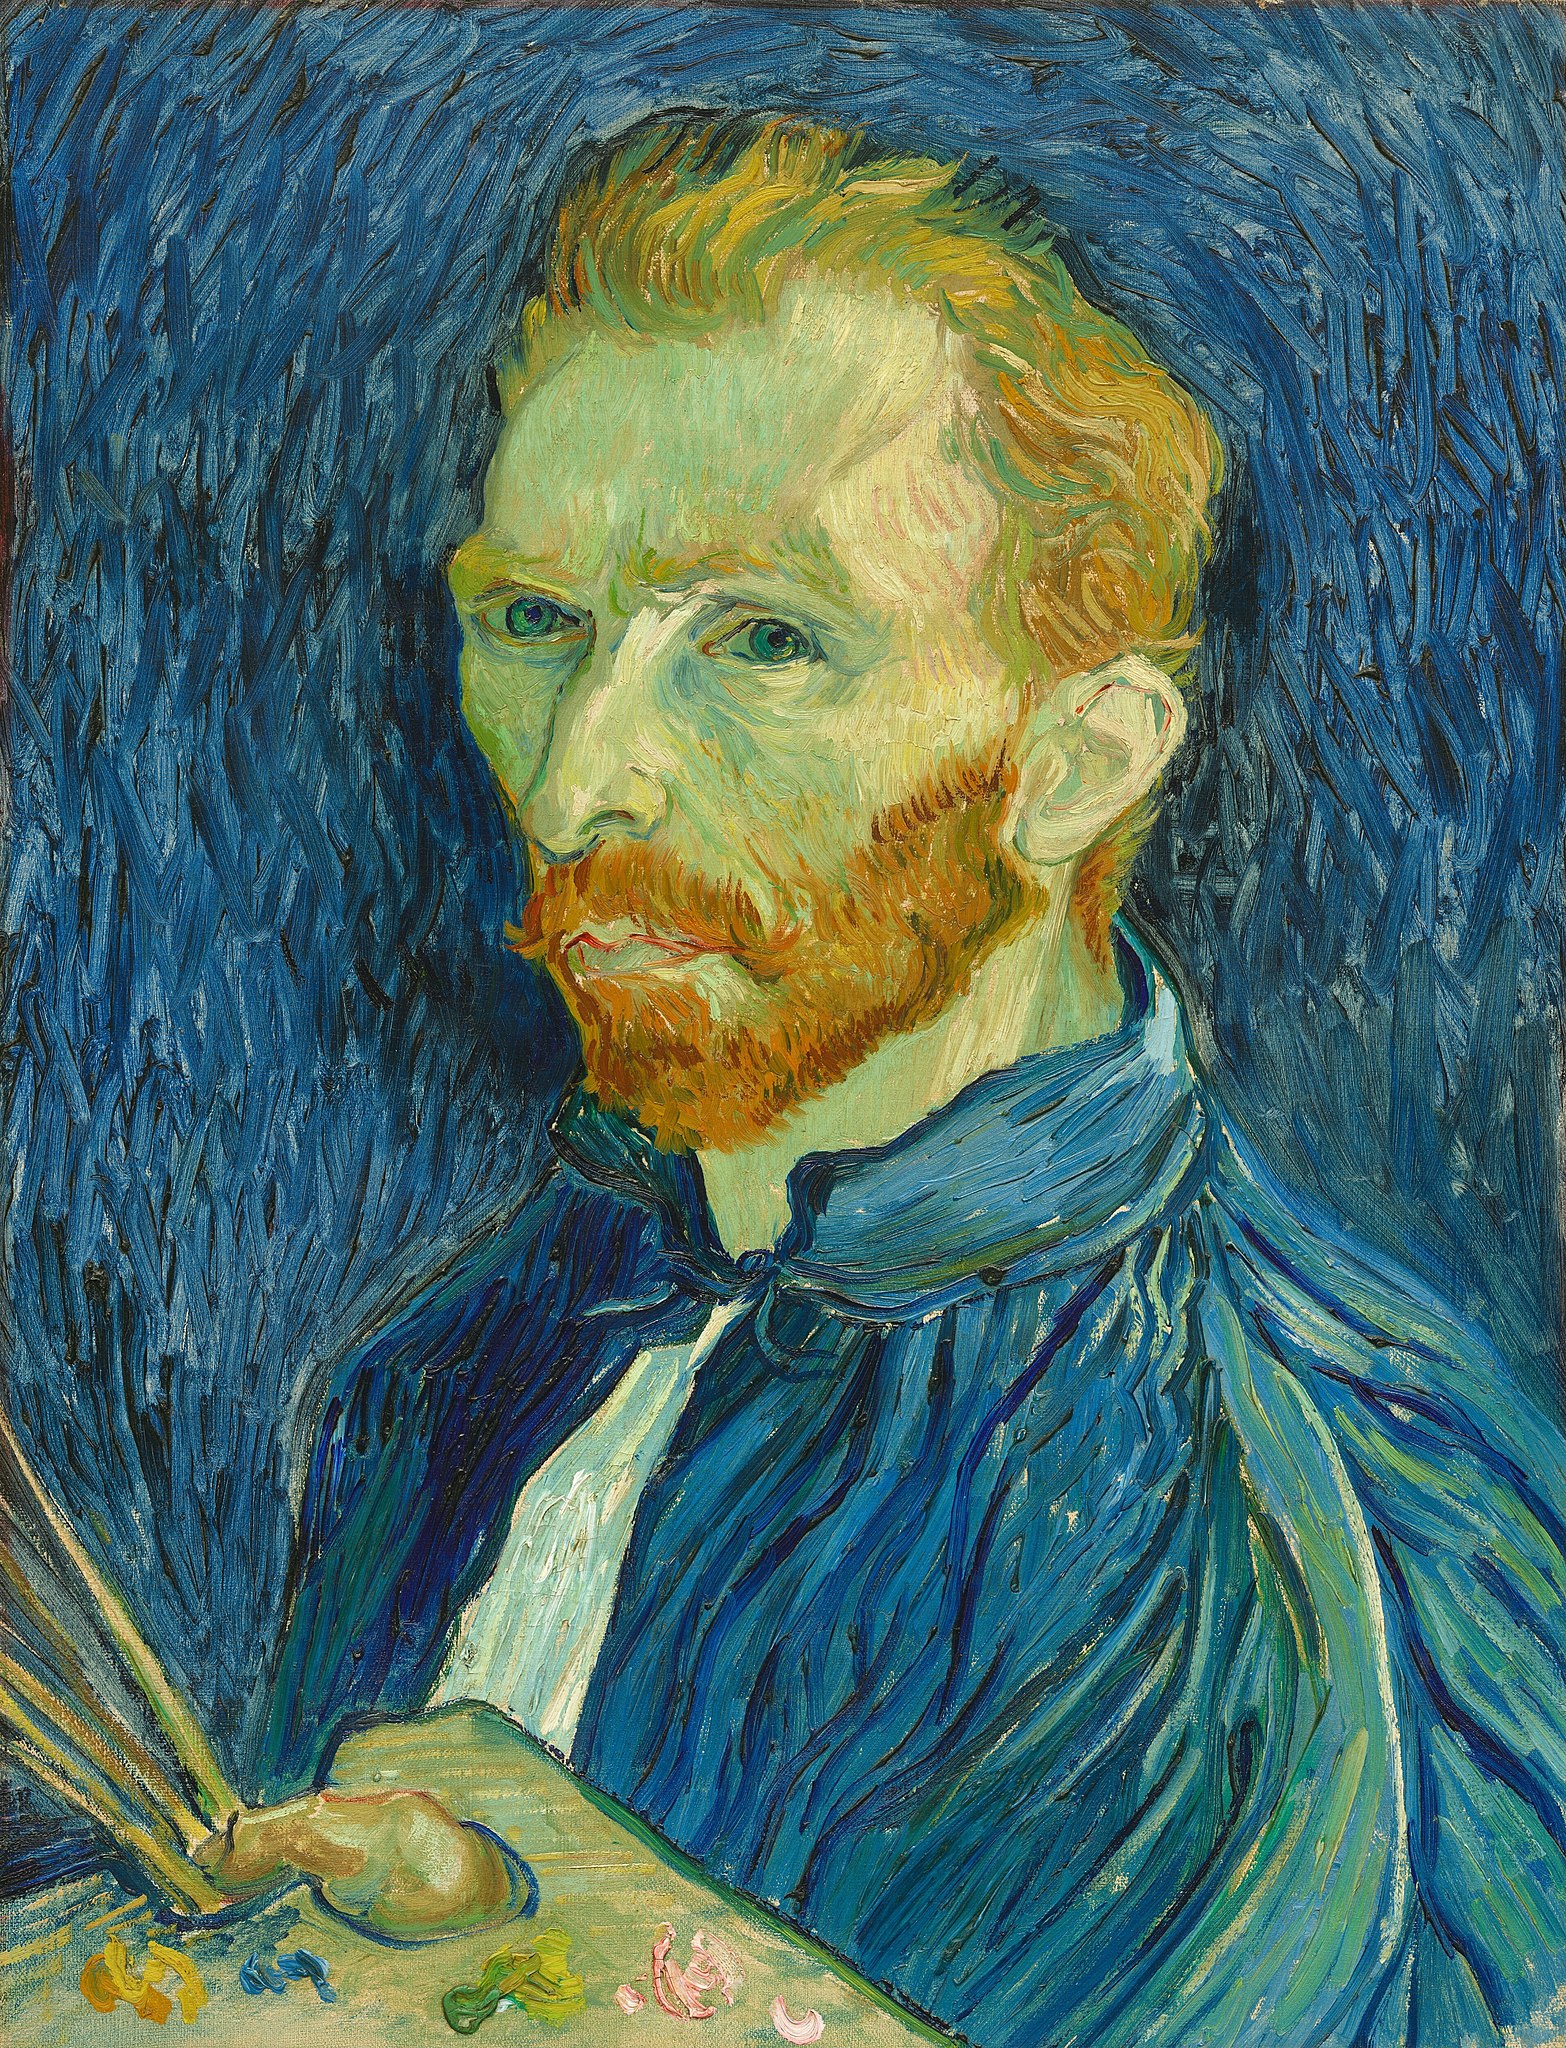 Autoportret by Vincent van Gogh - 1889 - 43.8 x 57.1 cm 